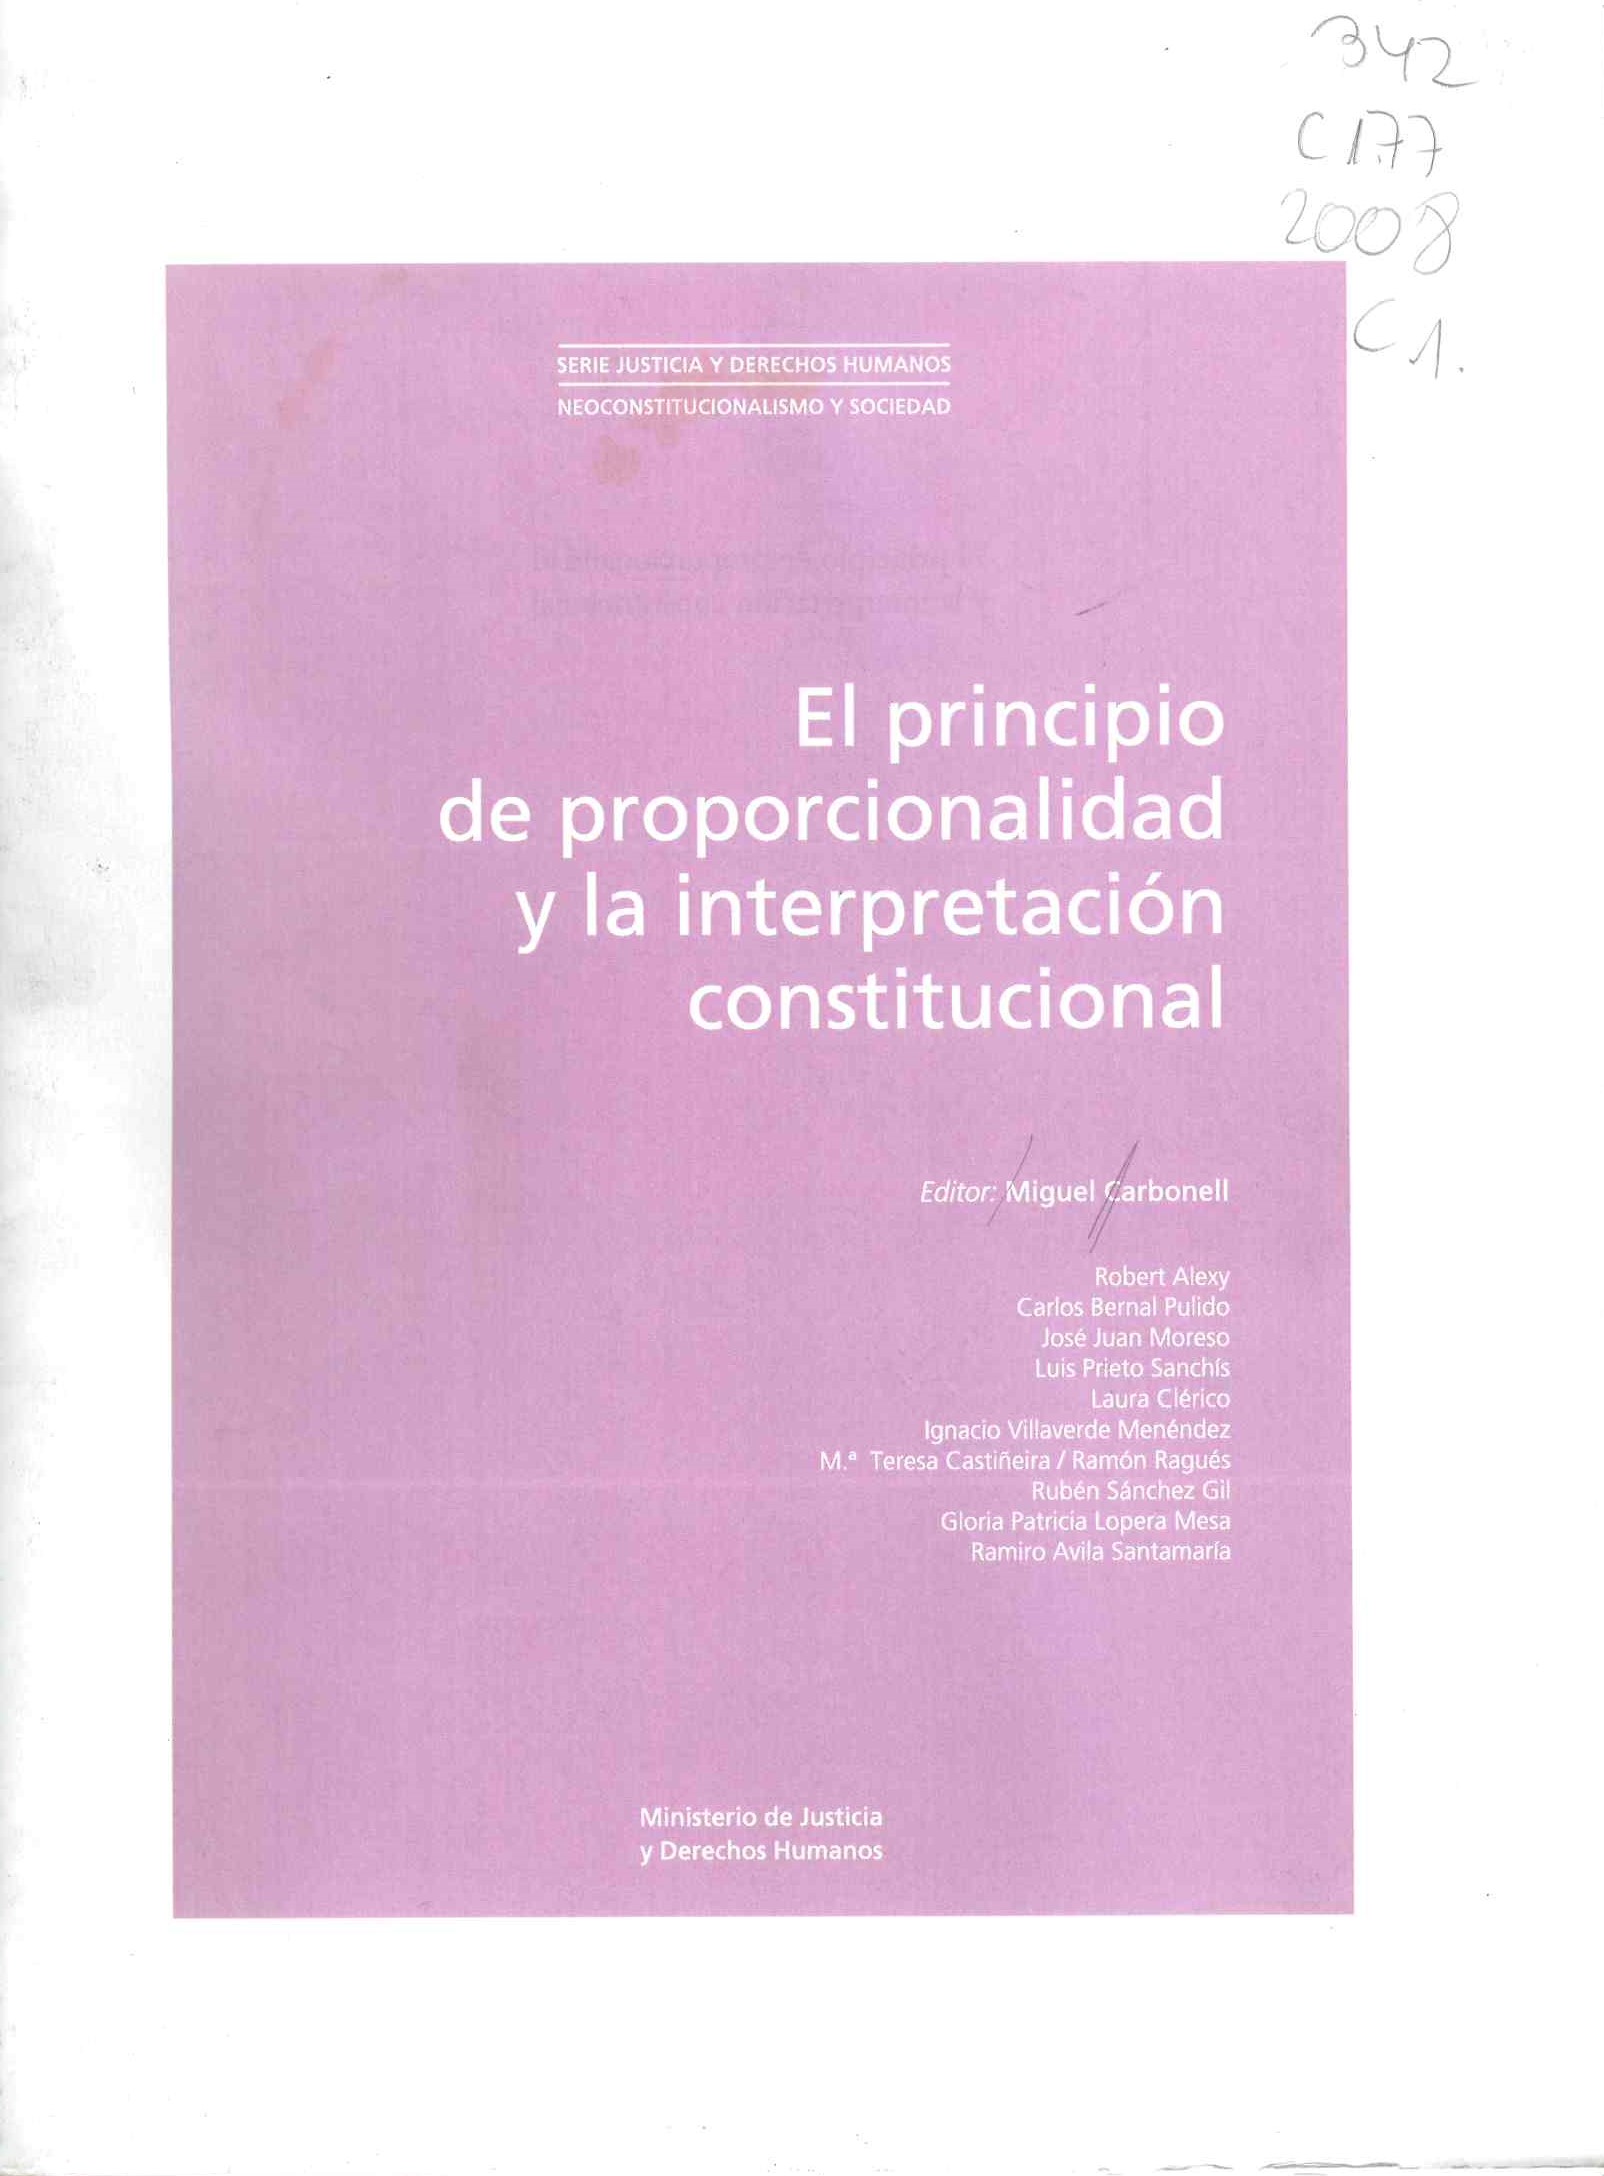 El principio de proporcionalidad y la interpretación constitucional